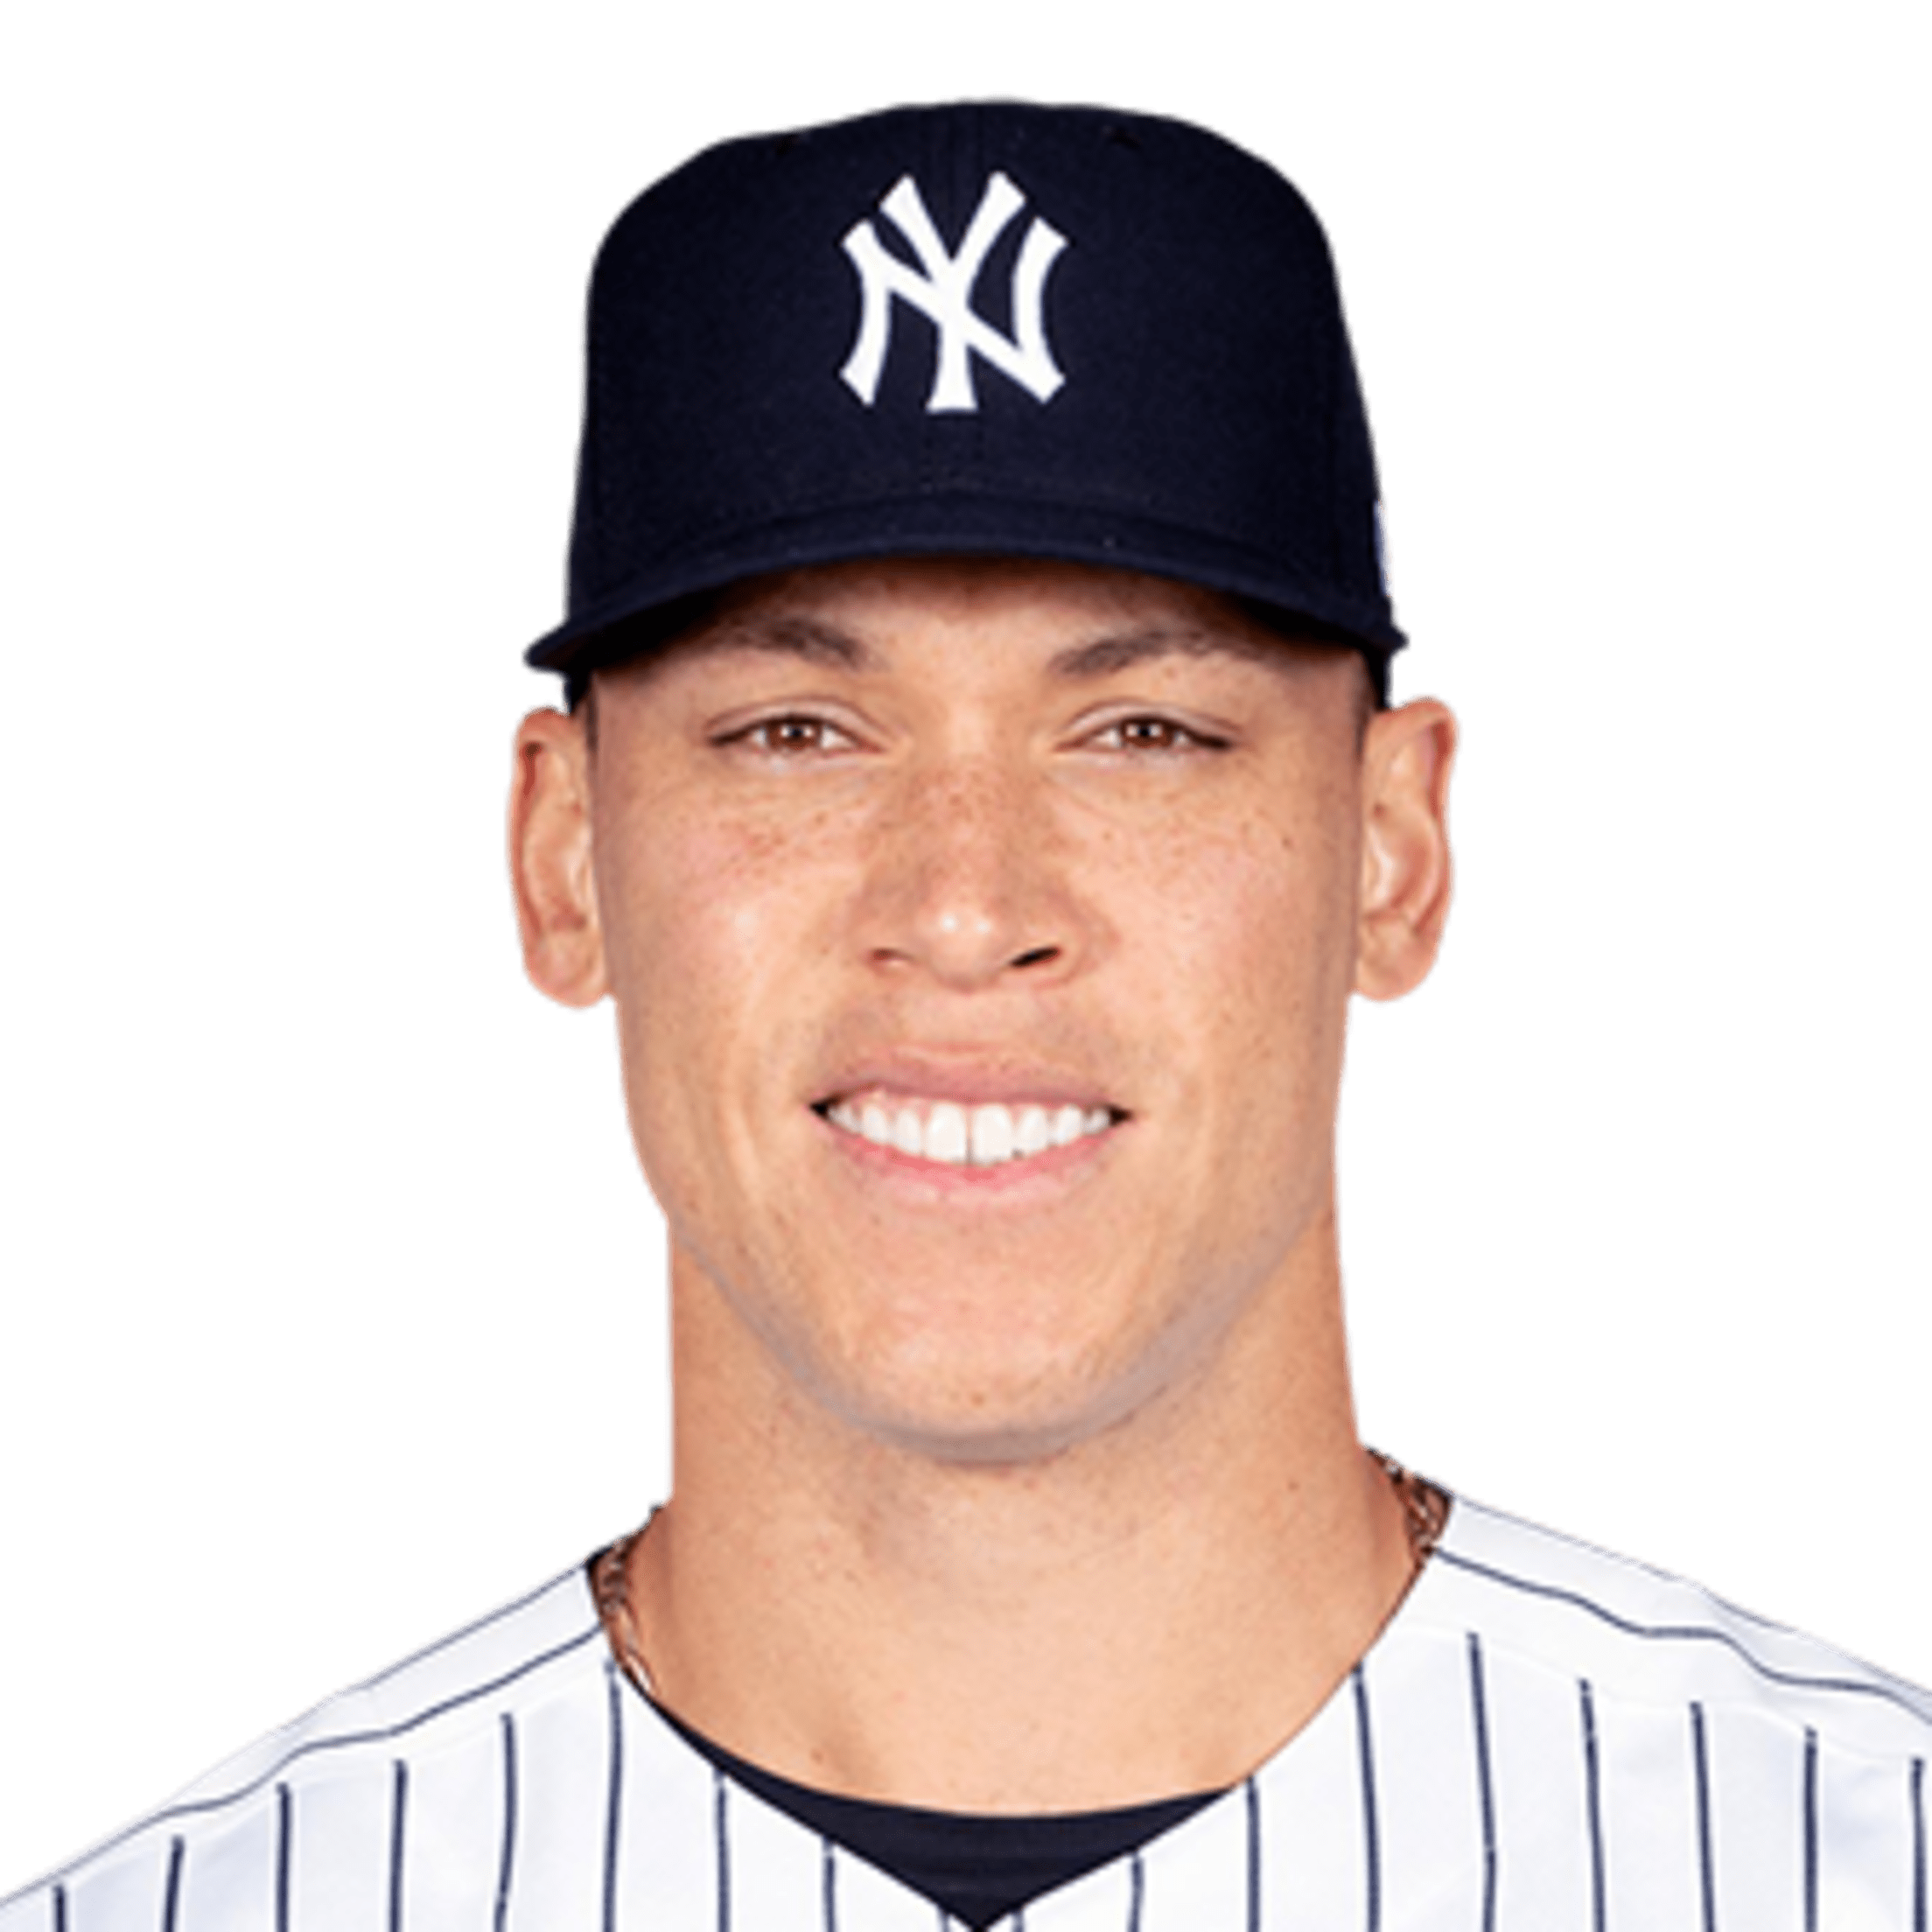 Yankees Player WalkUp Songs New York Yankees